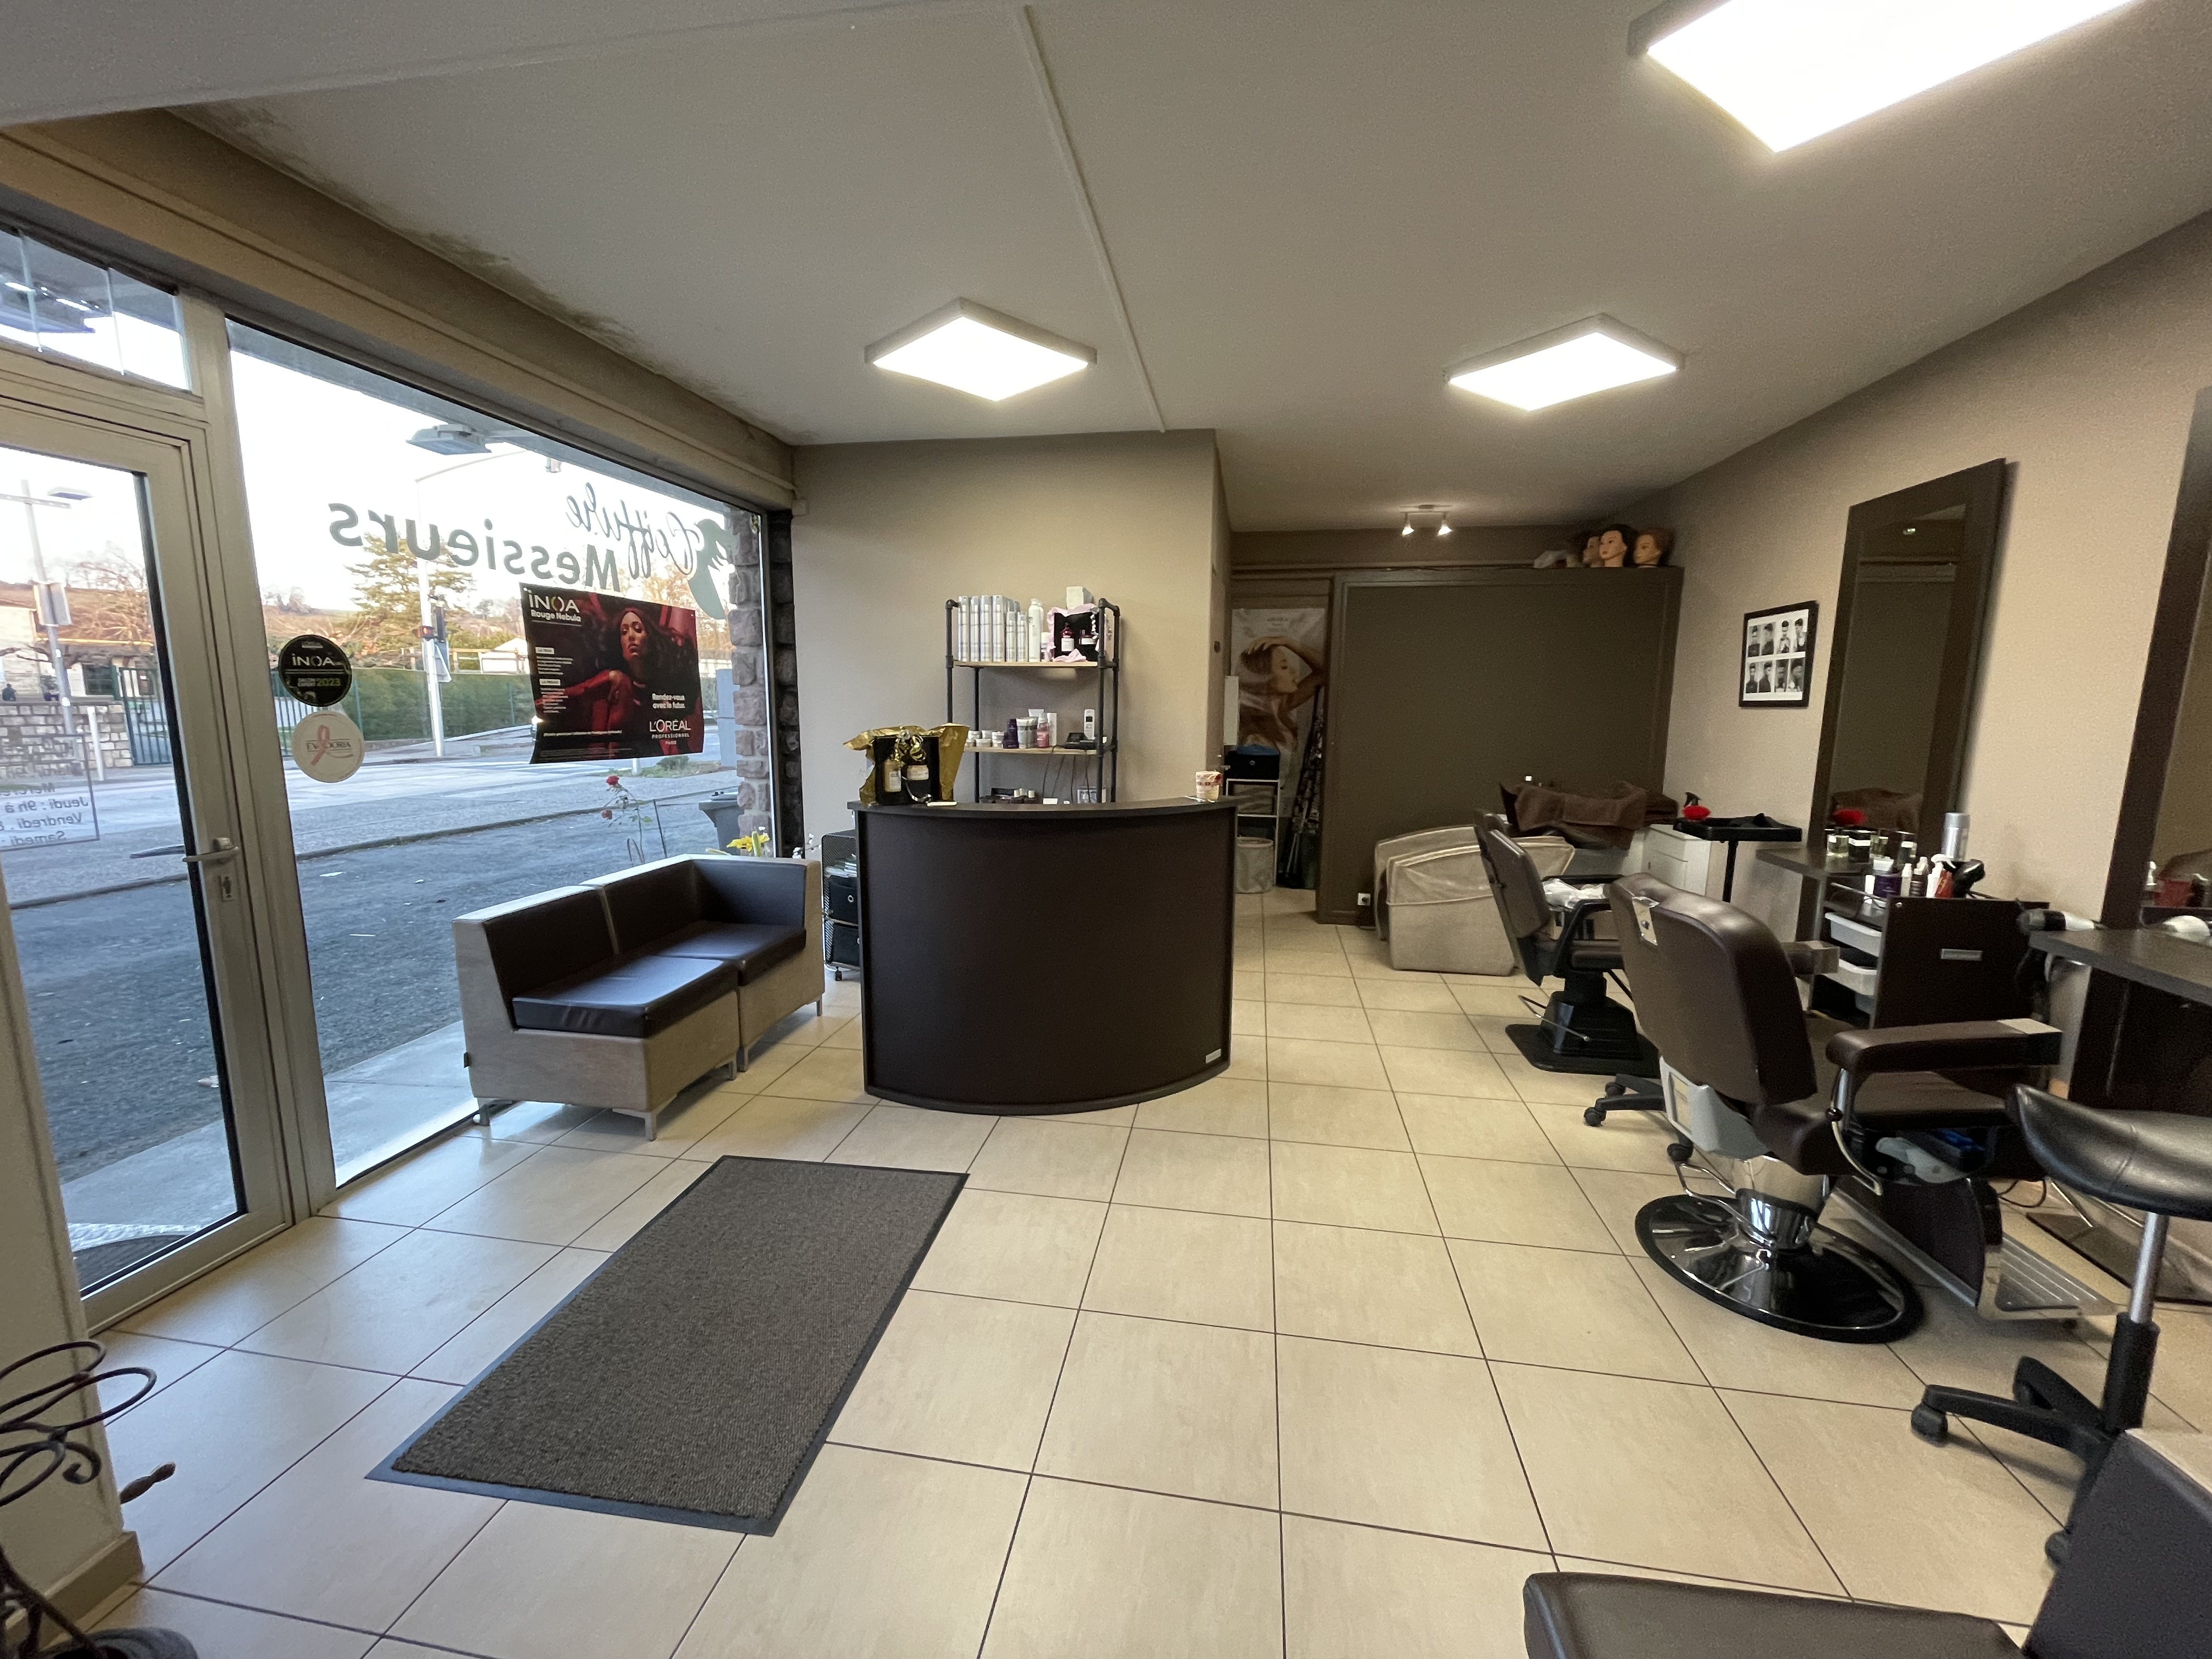 Vend salon de coiffure mixte existant depuis plus de 30 ans et situé dans sur une commune dynamique à proximité de Marmande.